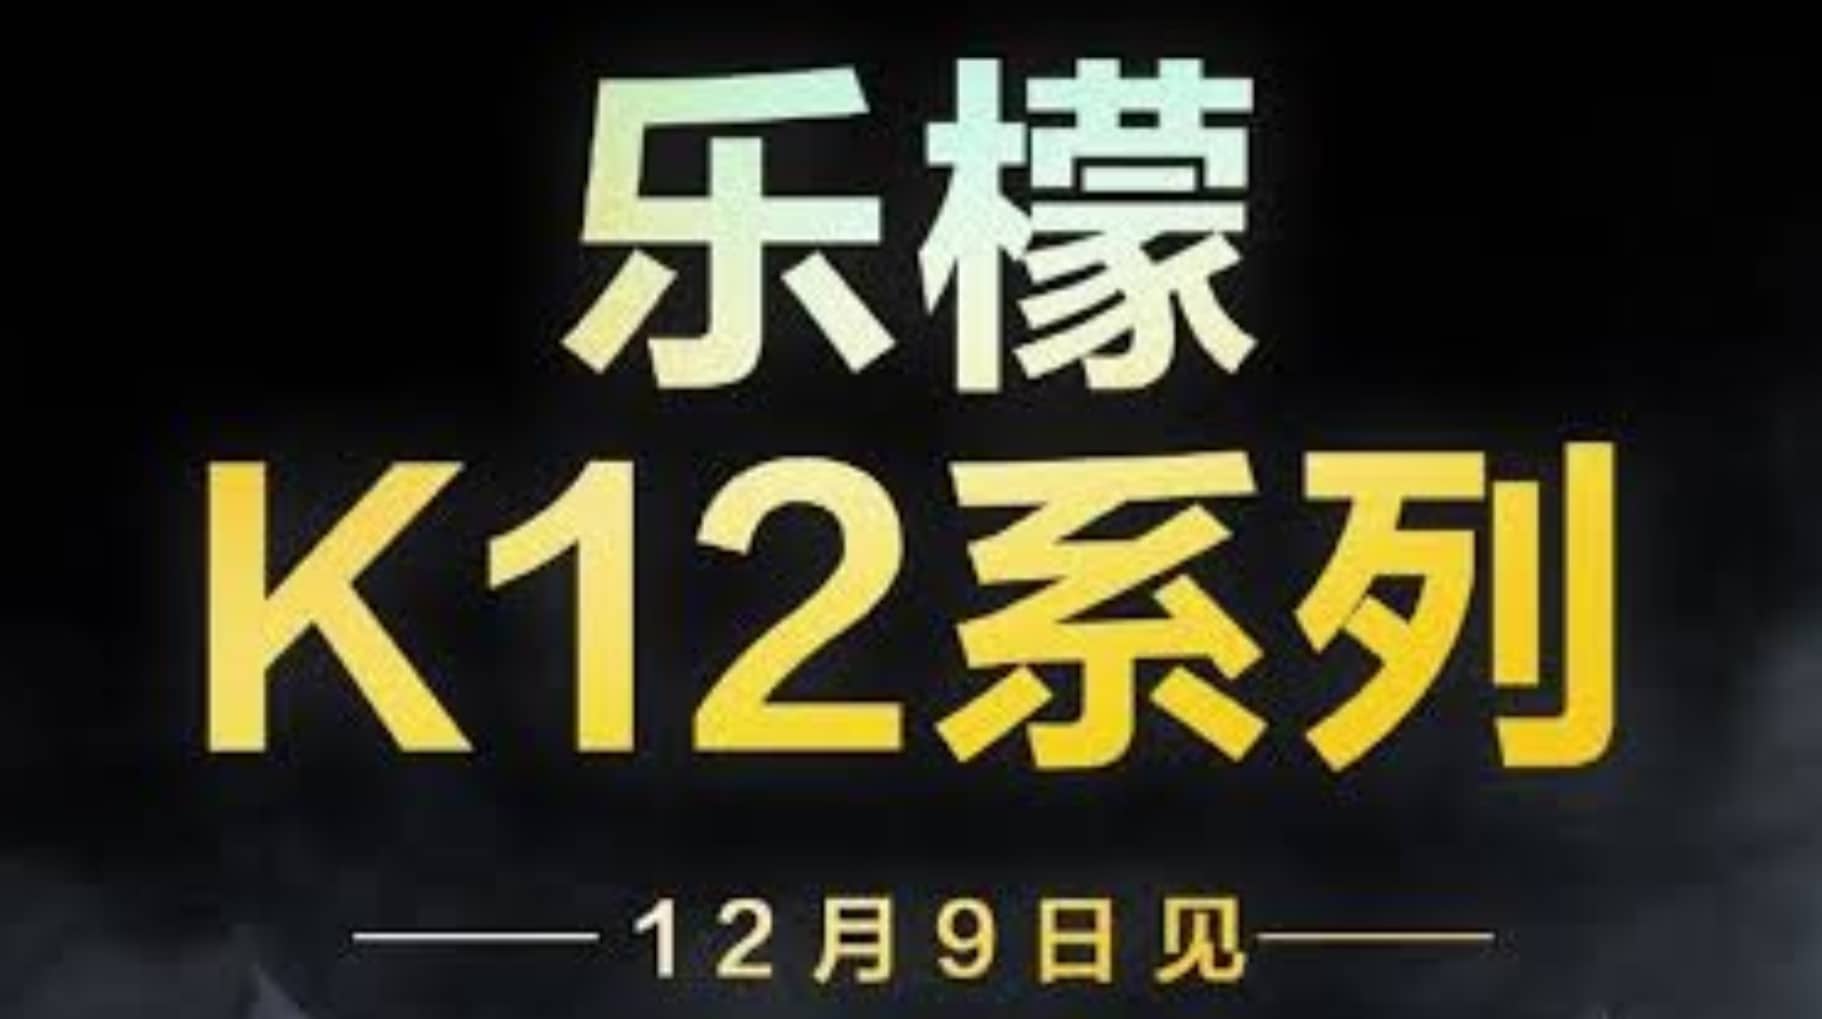 Confirmed: Lenovo Lemon K12 Series To Launch On December 9